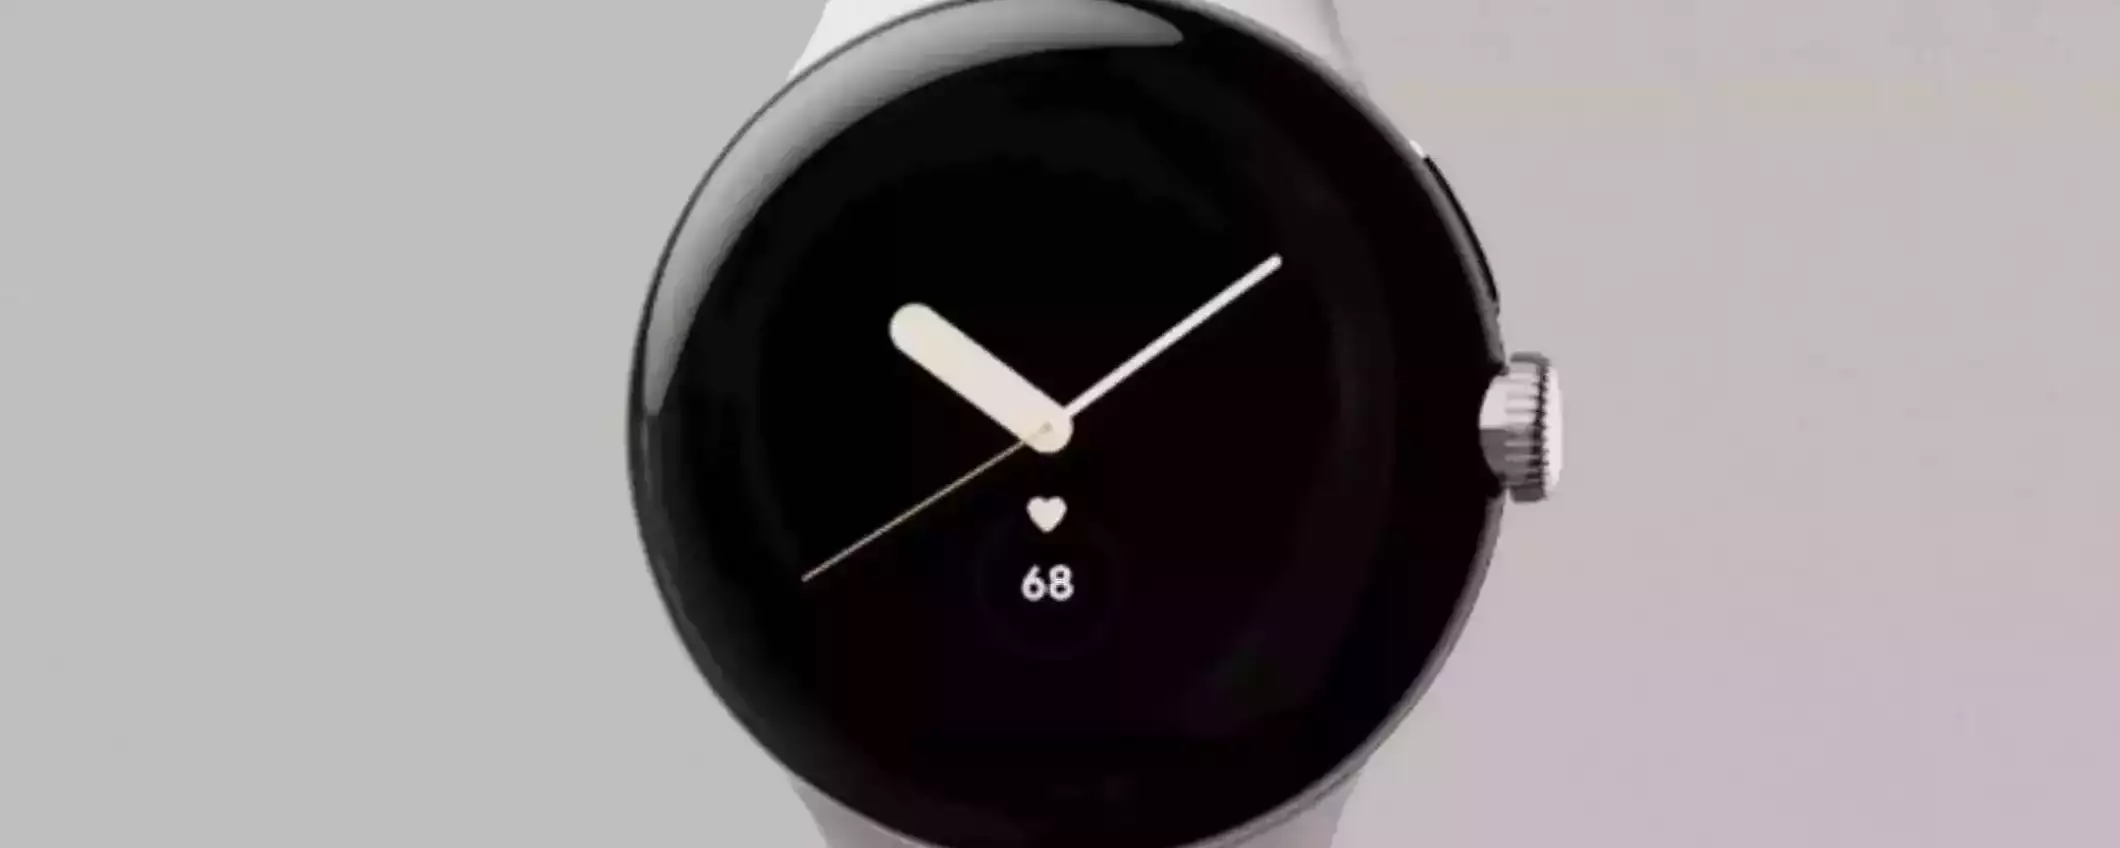 Google Pixel Watch 2 in OFFERTA a tempo limitato a soli 299,90€ su Amazon